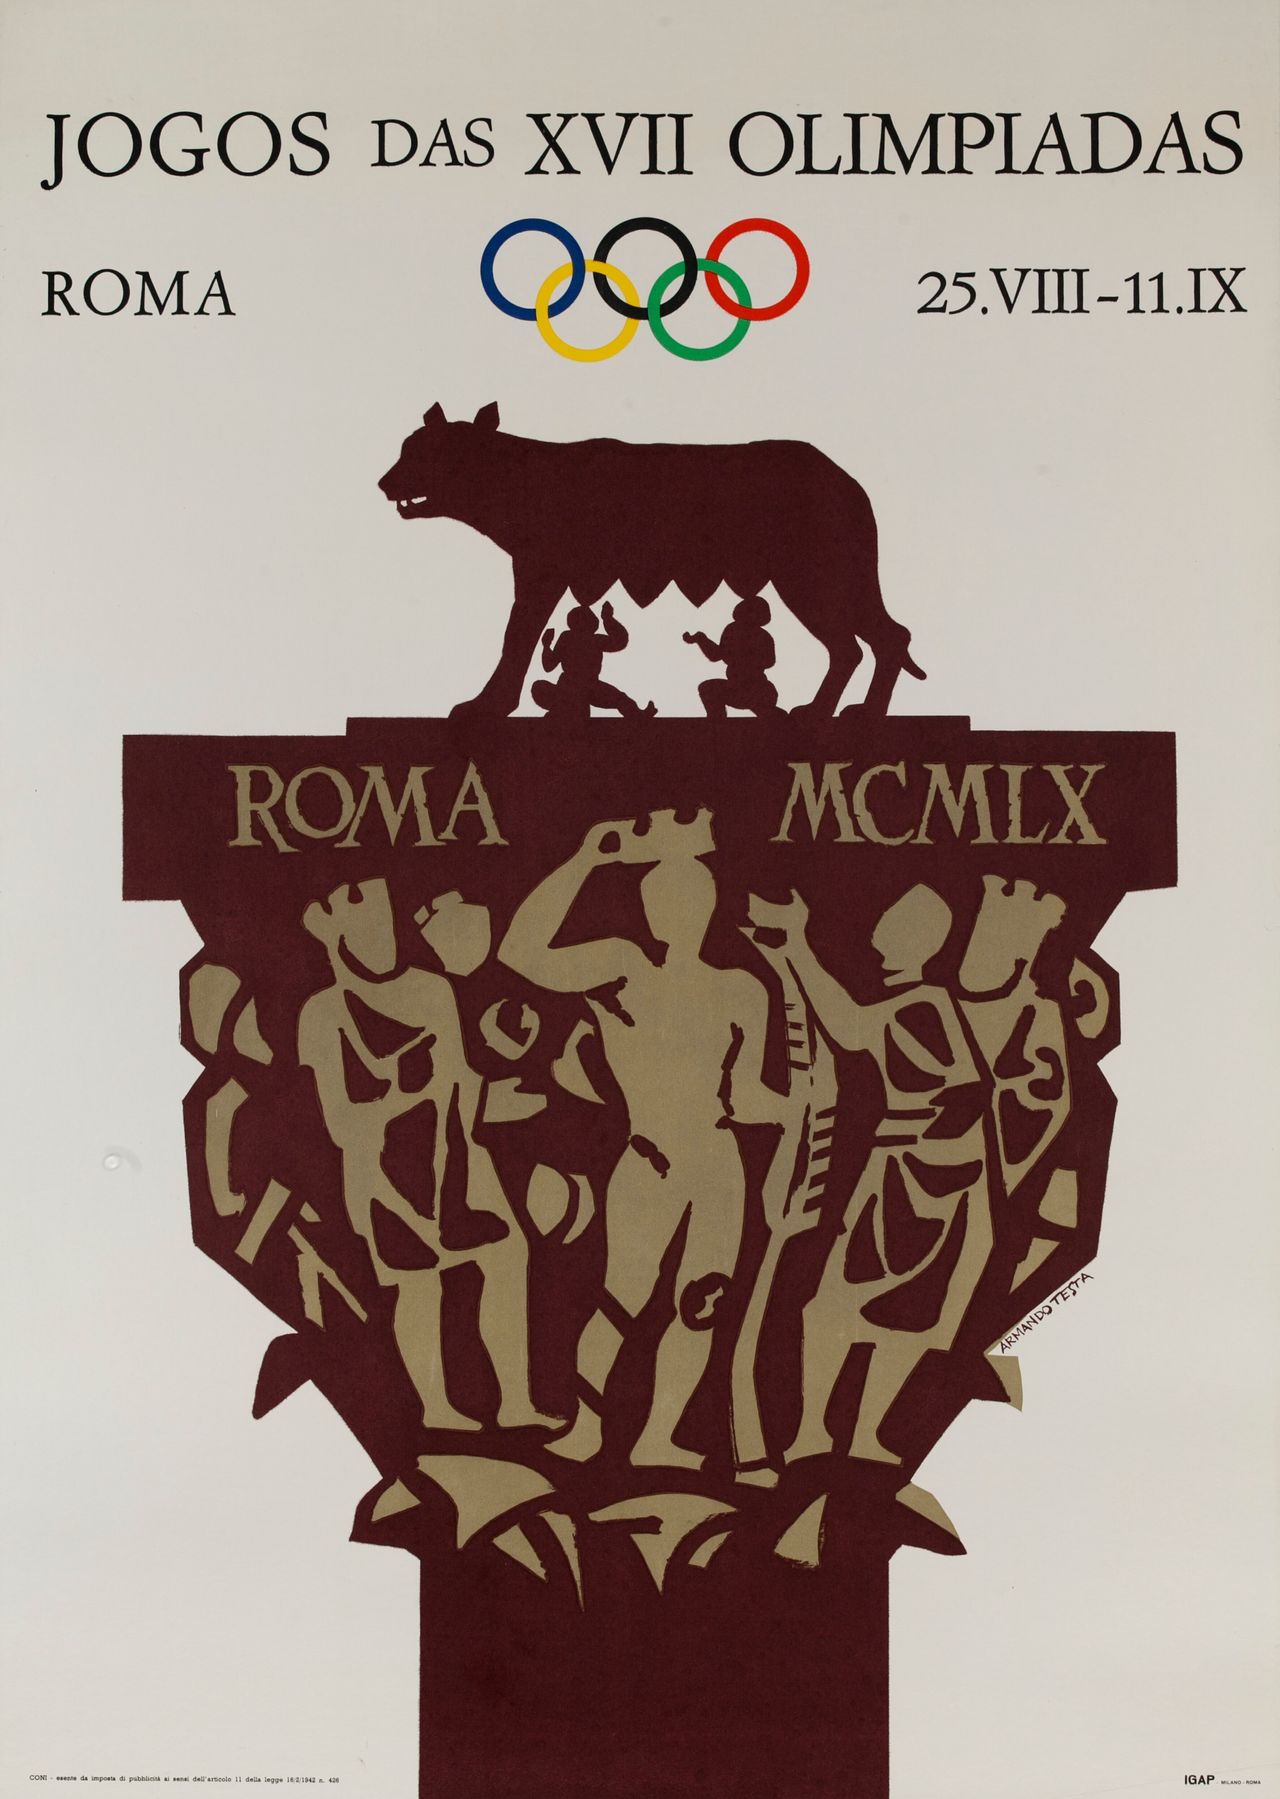 1960 η αφίσα για τους Ολυμπιακούς Αγώνες που διεξήχθησαν στη Ρώμη.